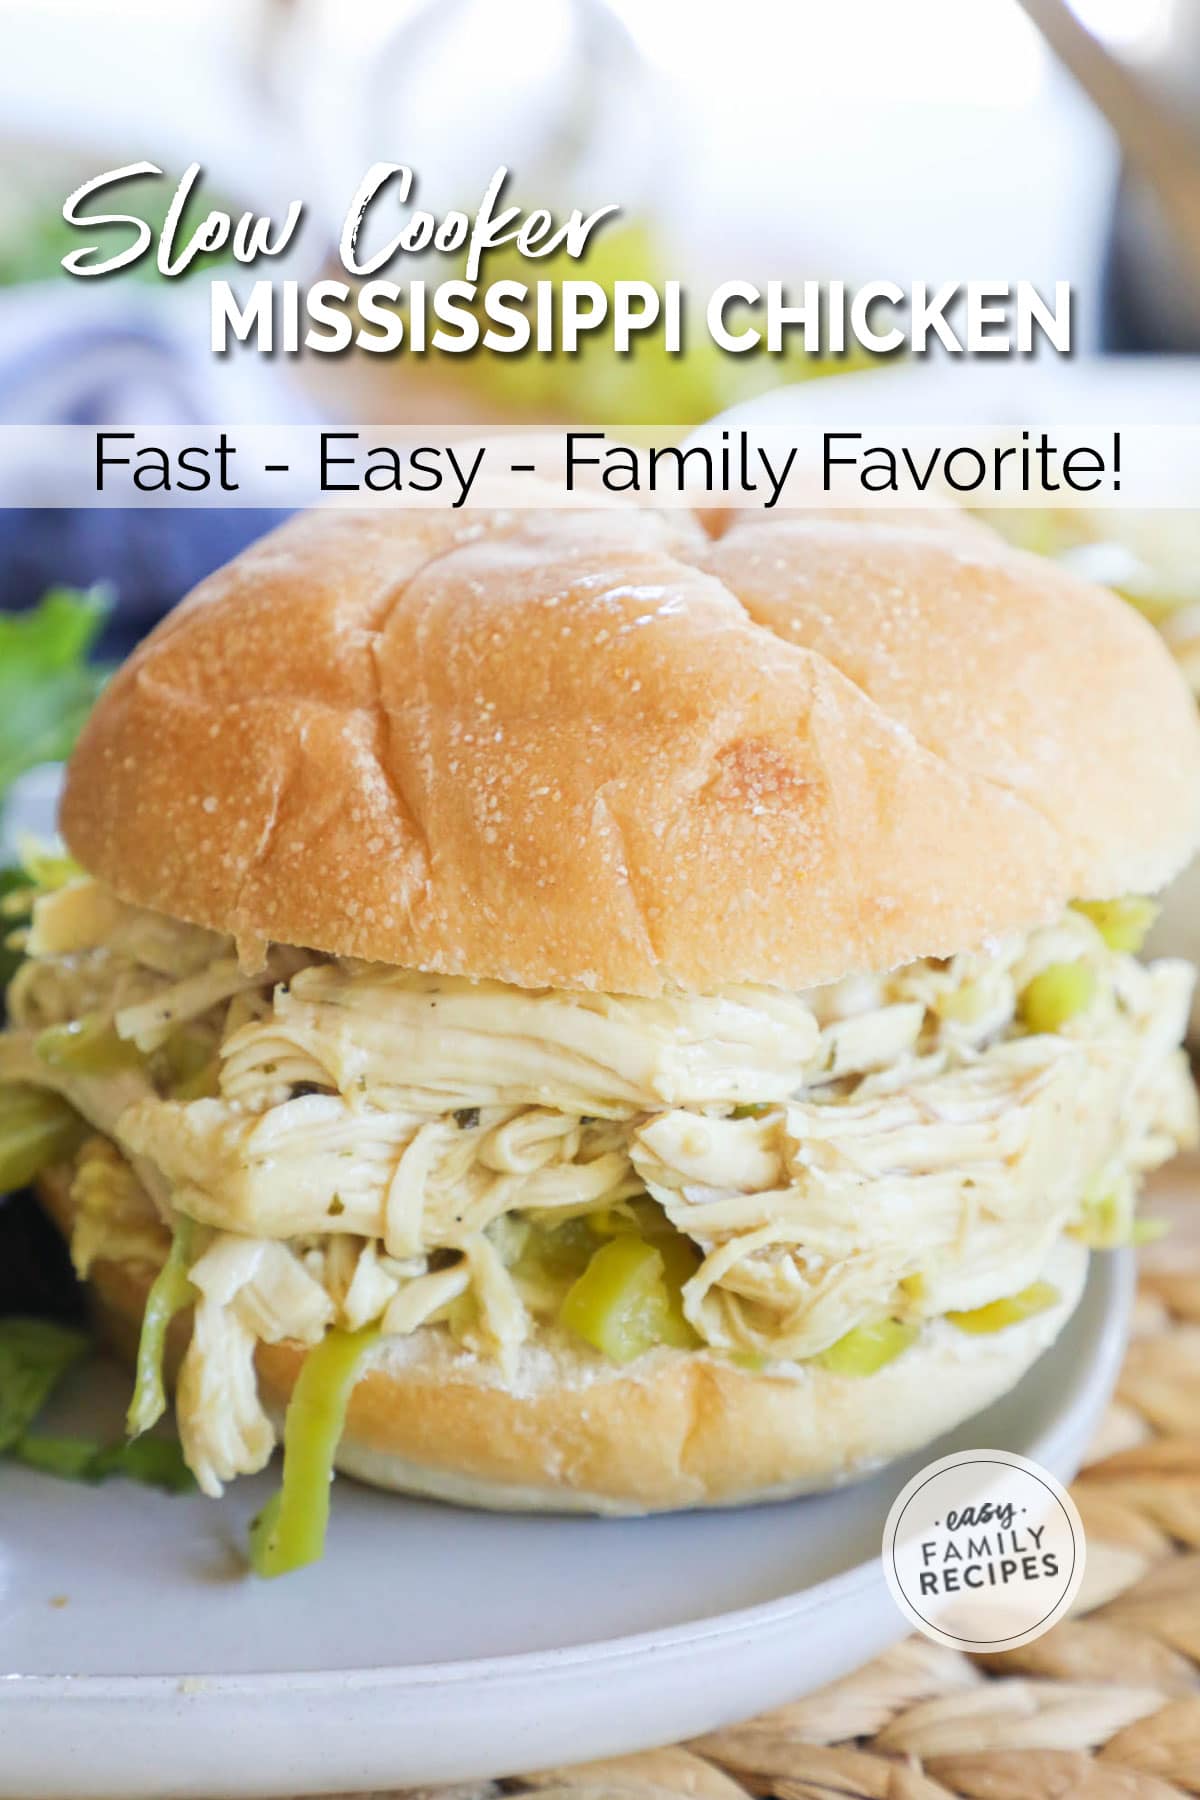 Mississippi Chicken Sandwich